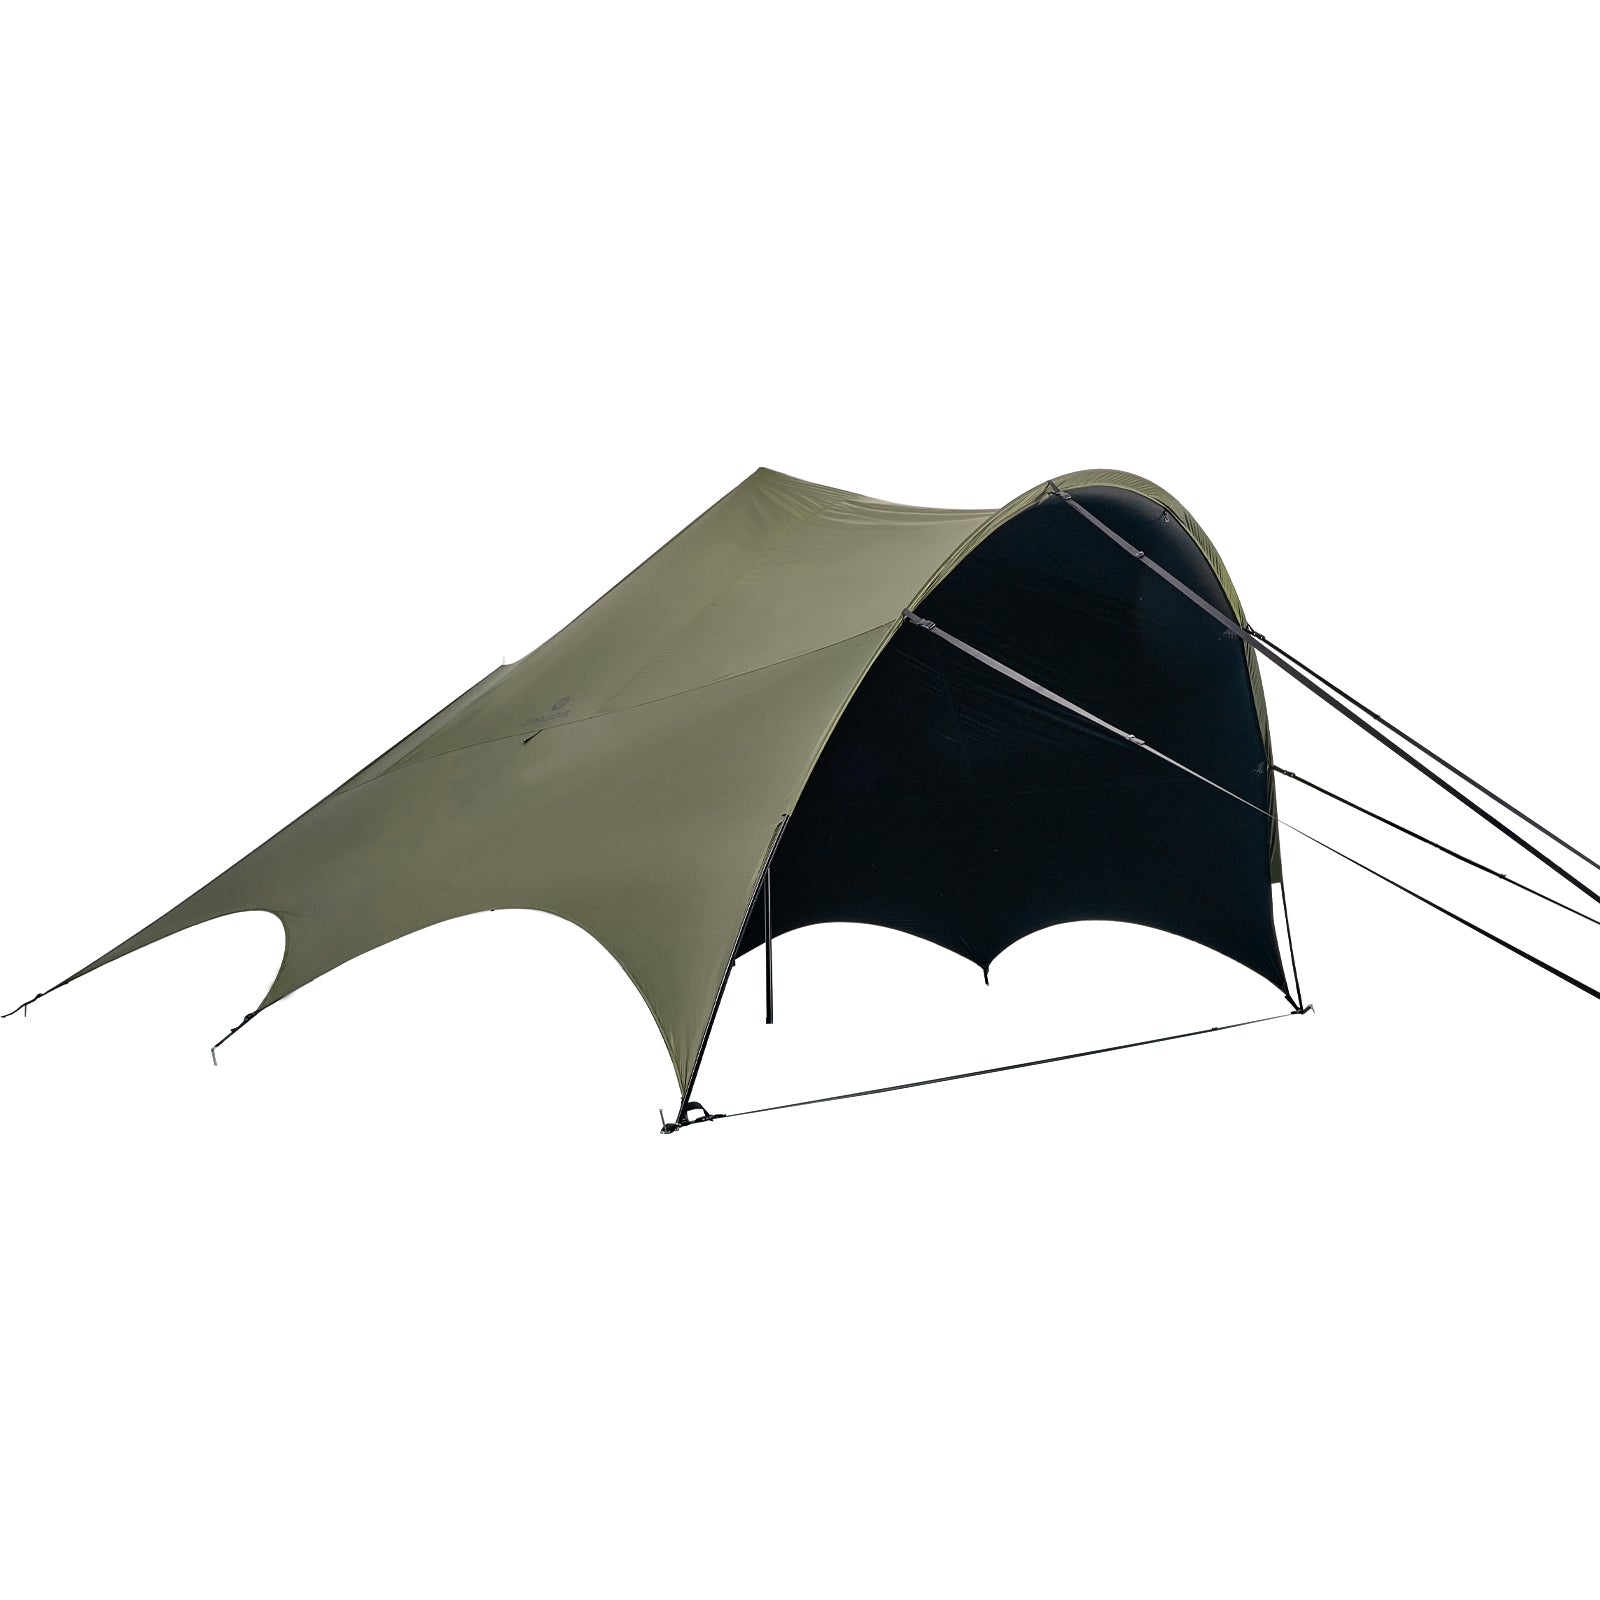 胡蝶天幕テント防雨防風 UVカット 遮光 ユニック ペグロープ付き